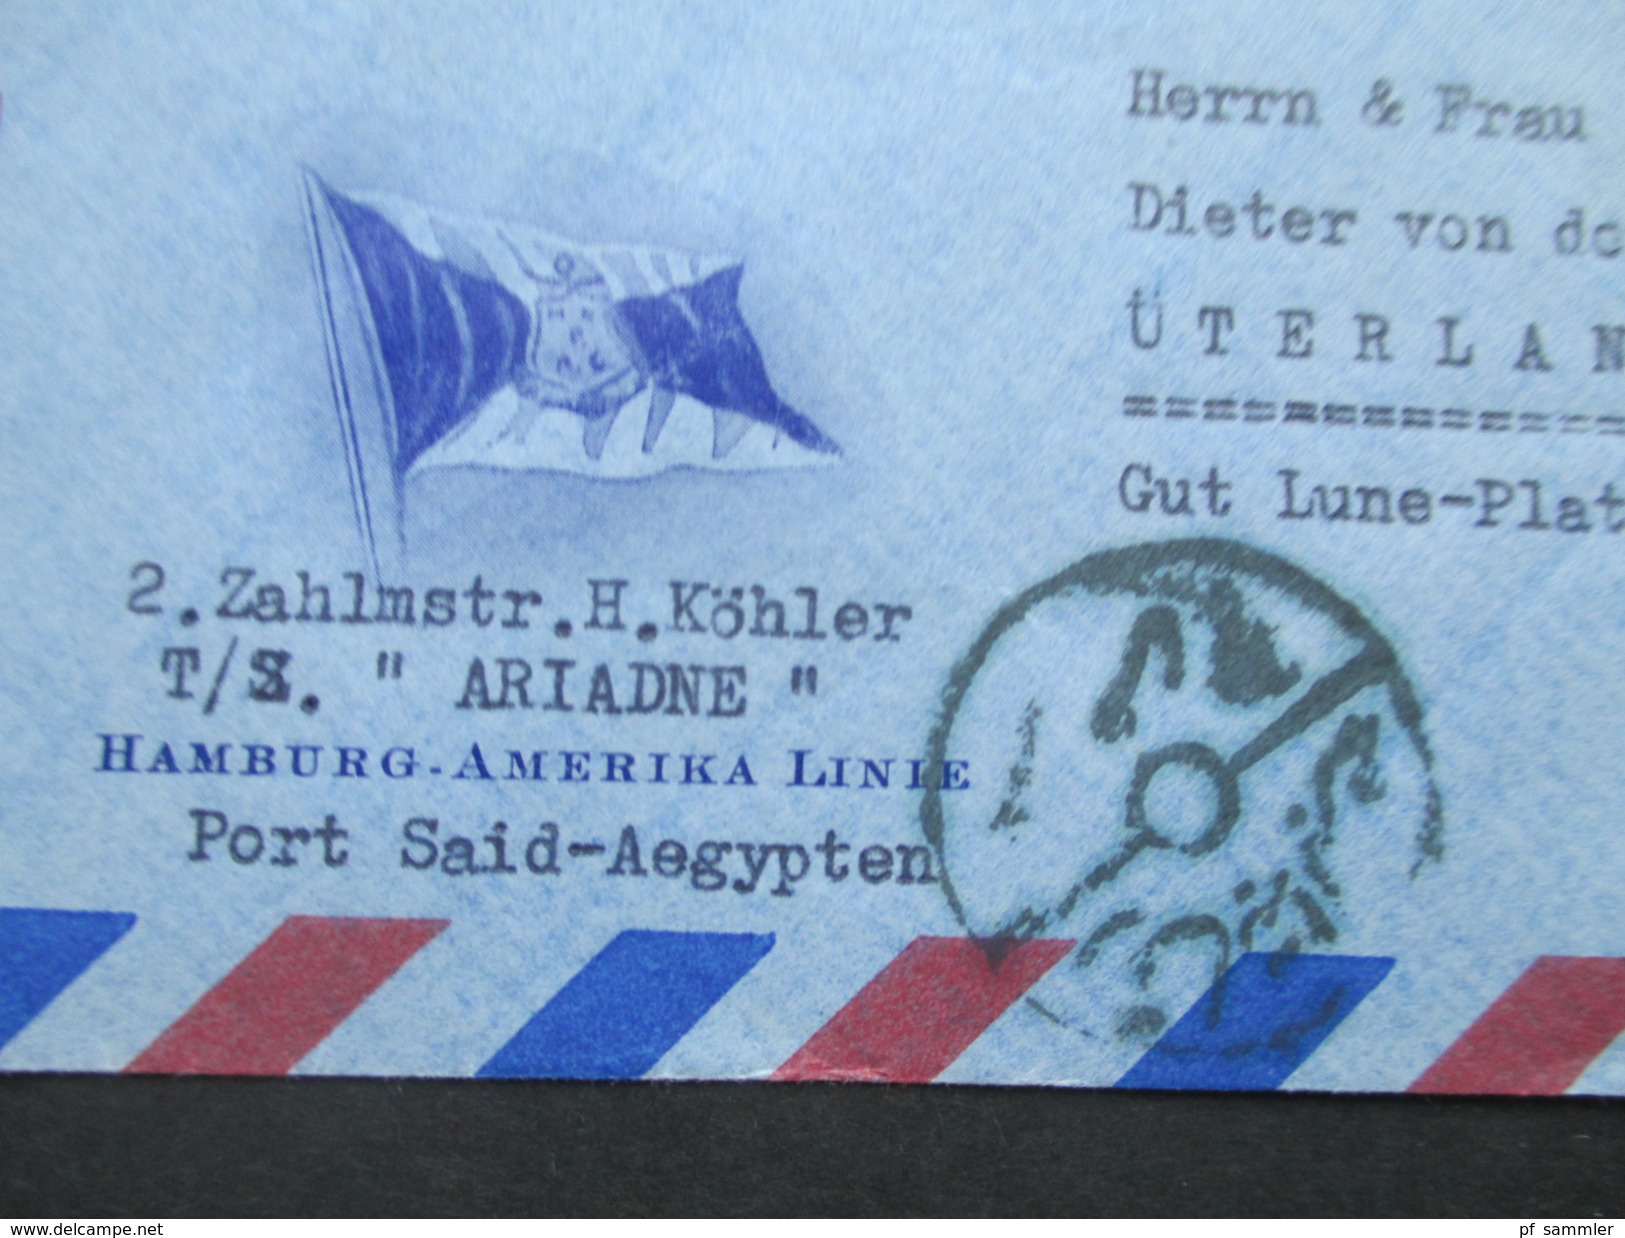 Ägypten 1950er Jahre Luftpostbrief / Schiffspost Hamburg - Amerika Linie. TS Ariadne. Nach Üterlande.Interessanter Beleg - Briefe U. Dokumente